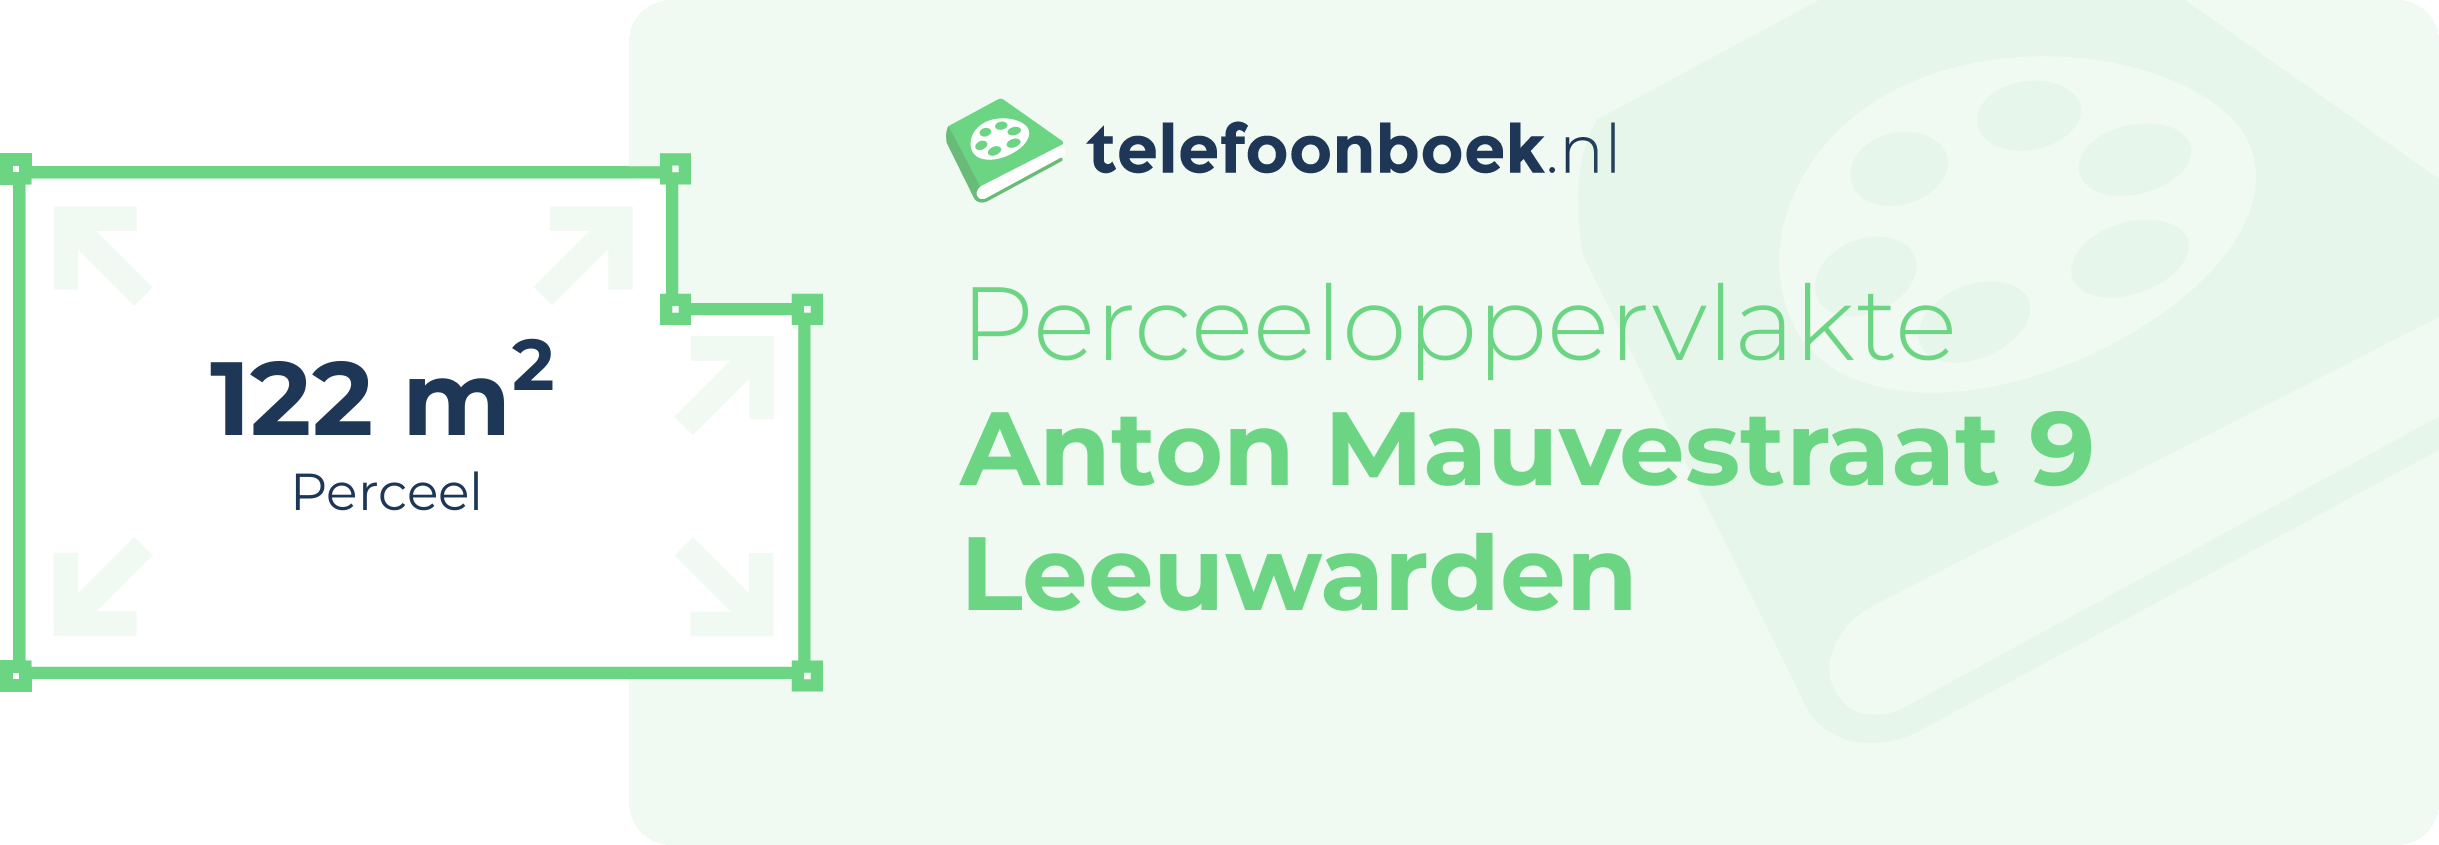 Perceeloppervlakte Anton Mauvestraat 9 Leeuwarden